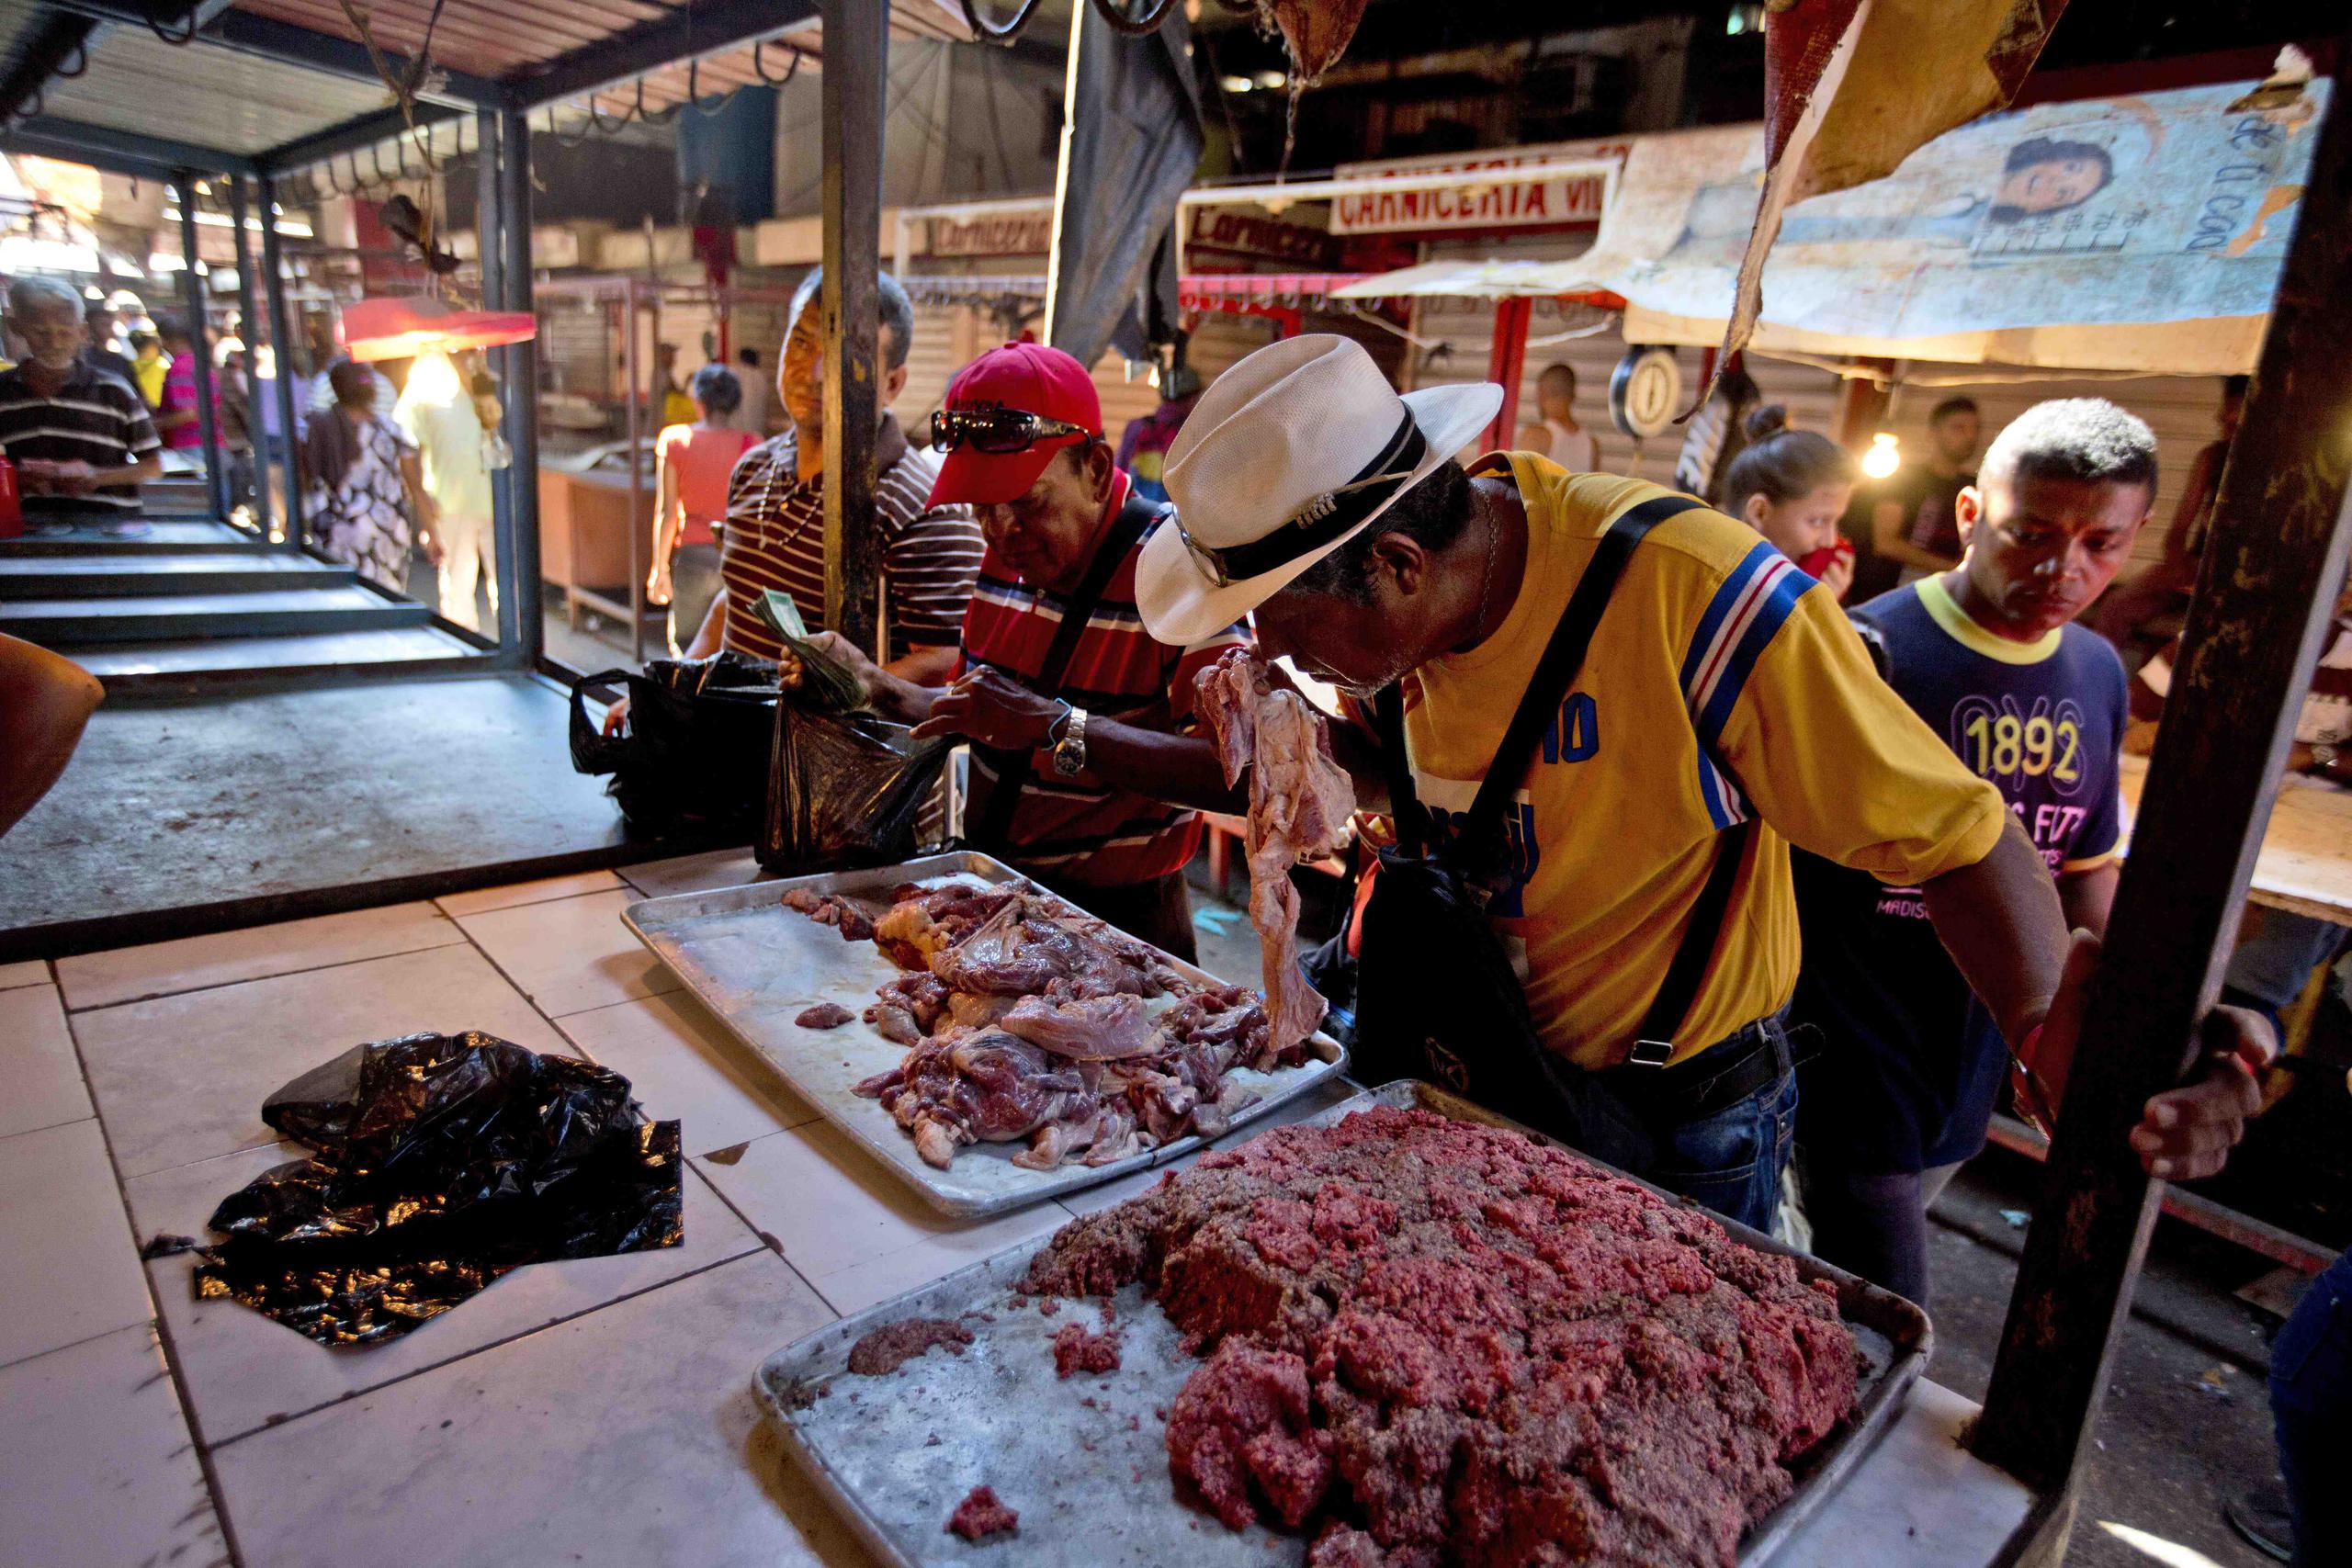 Cliente huele un pedazo de carne dañada en un mercado de Maracaibo, Venezuela. (AP / Fernando Llano)